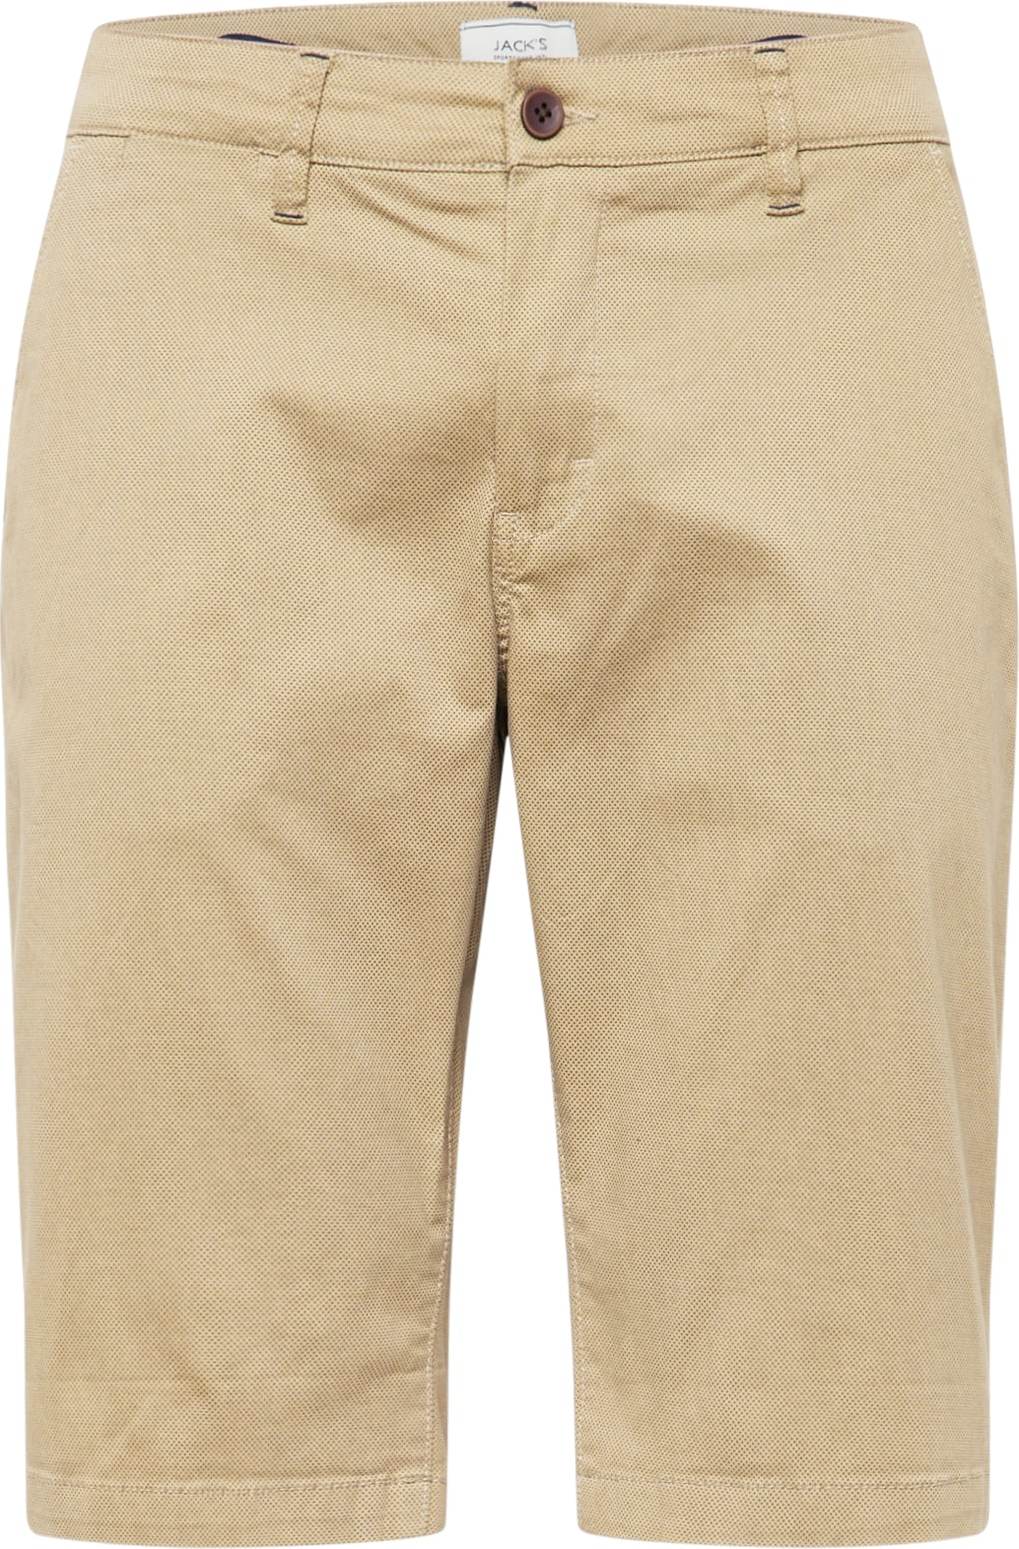 Jack's Chino kalhoty písková